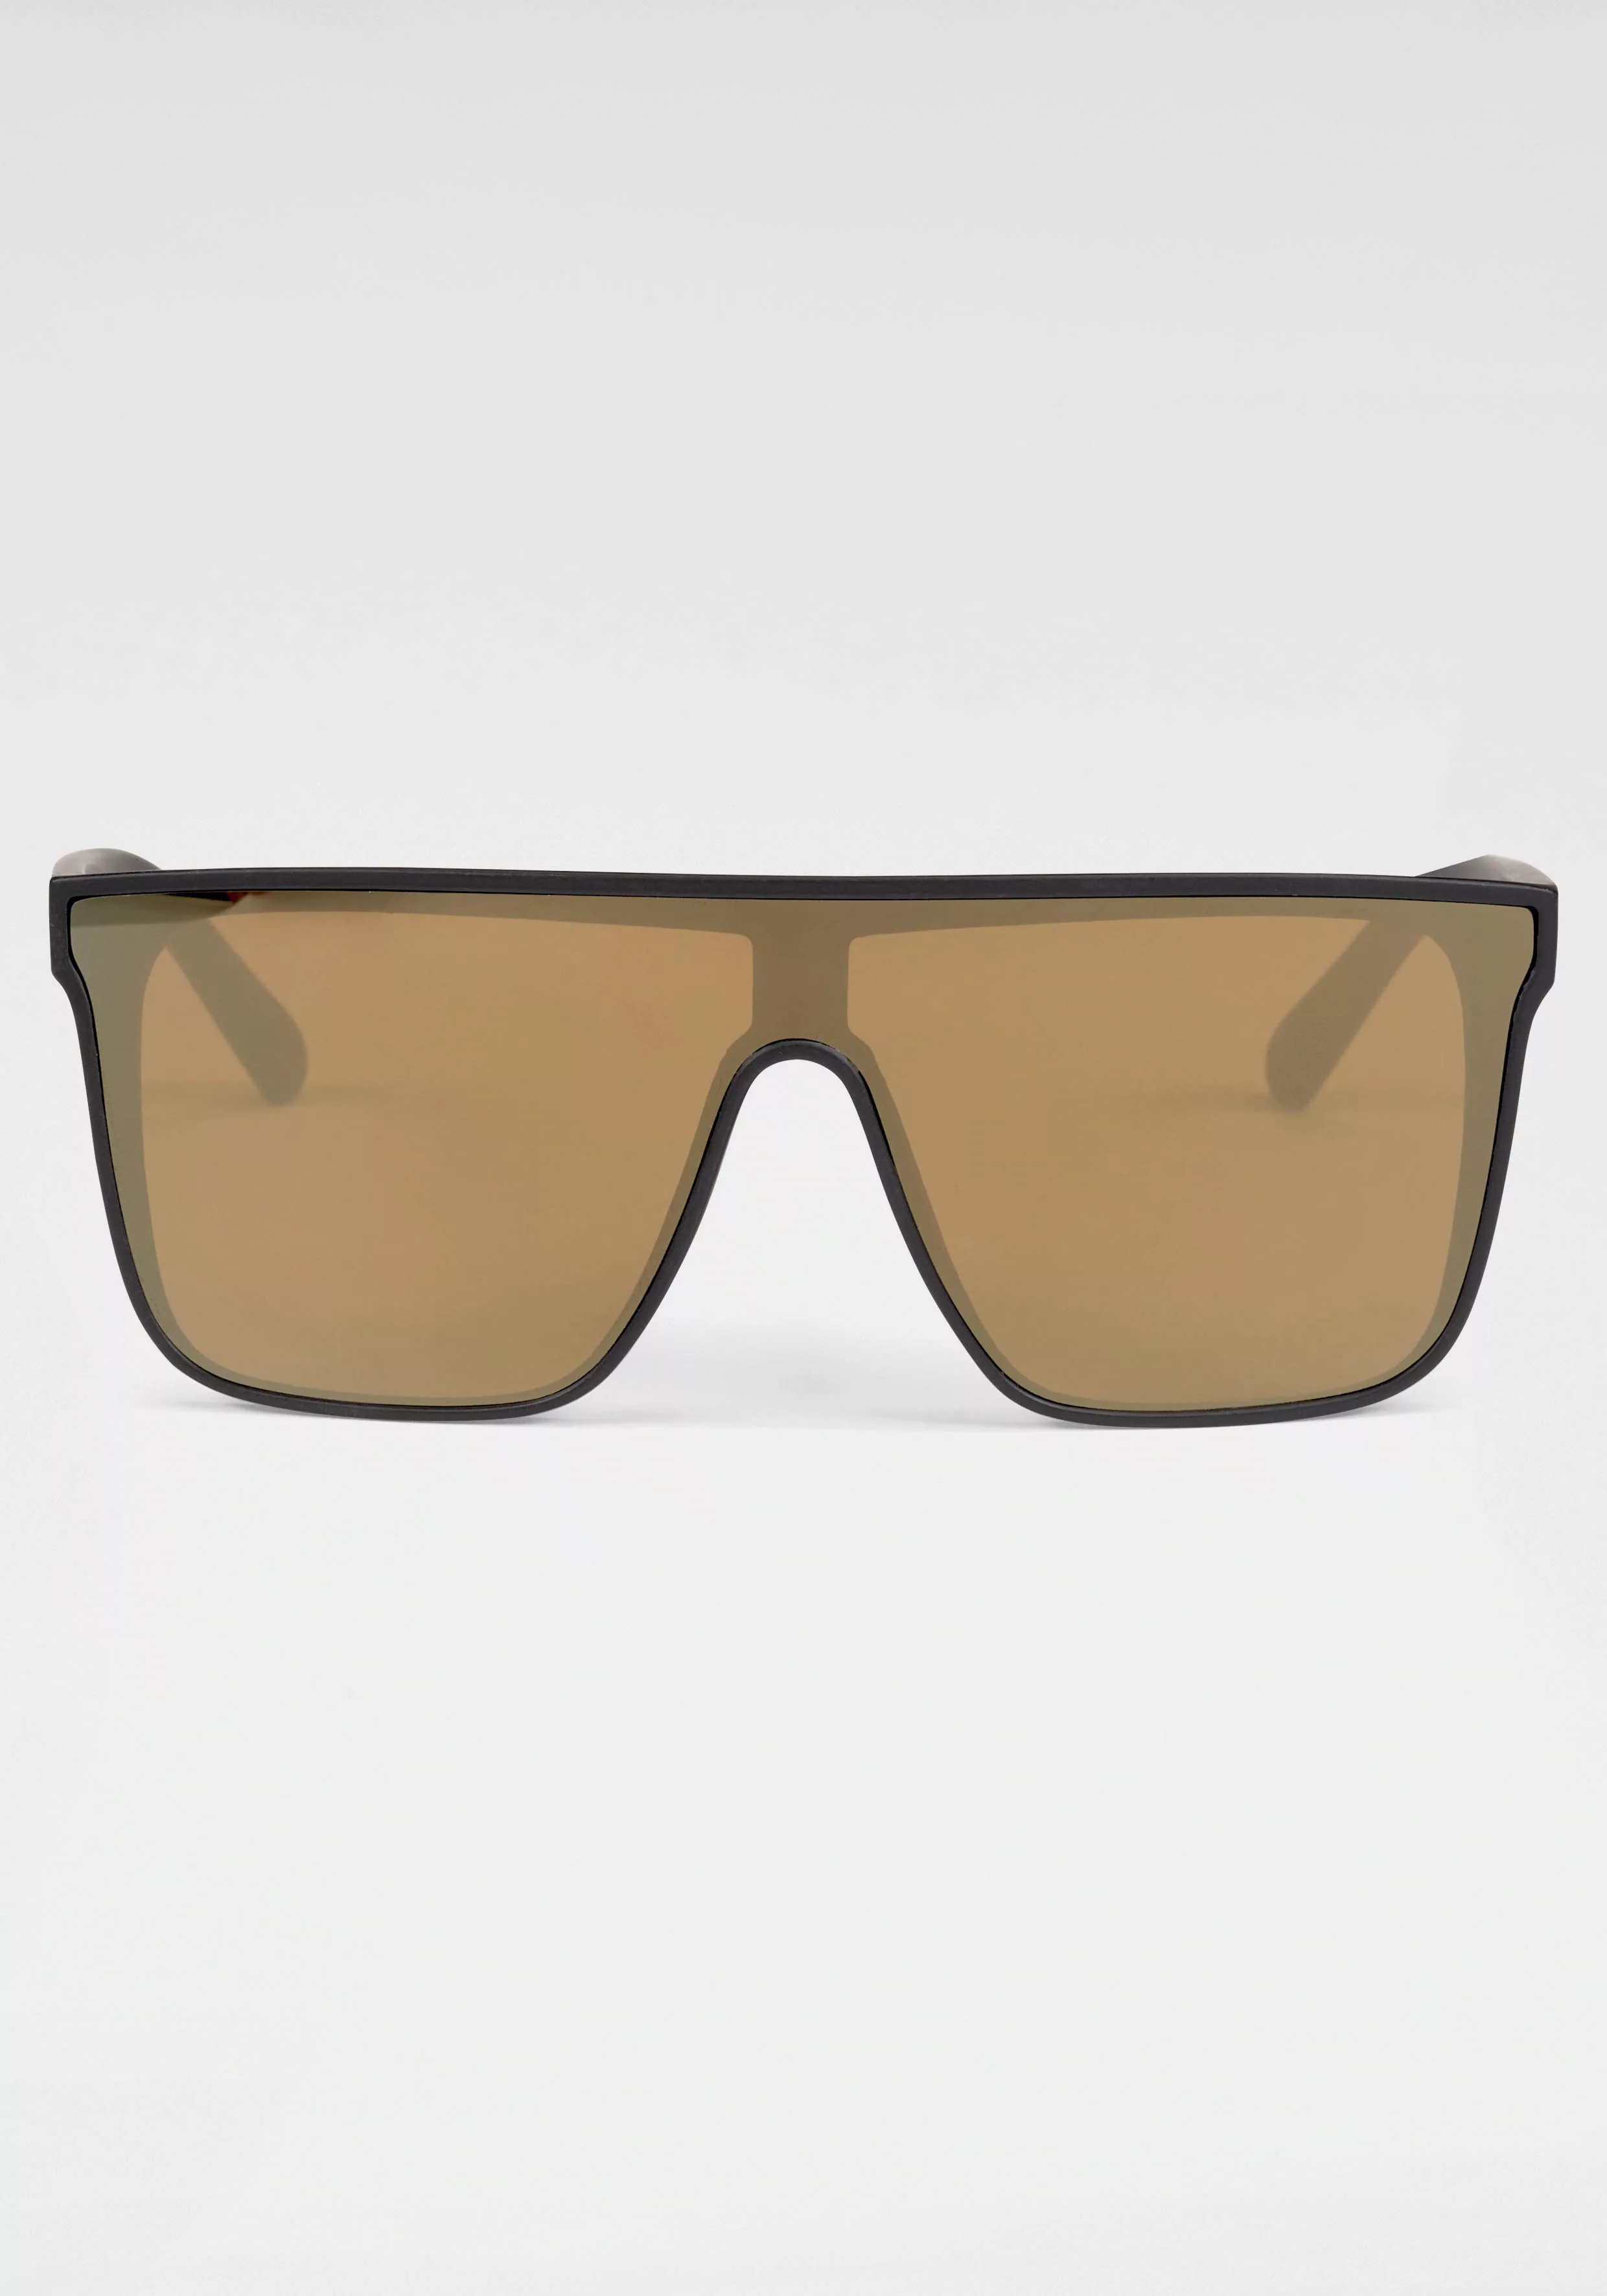 Venice Beach Sonnenbrille, Einscheibensonnenbrille aus Kunststoff günstig online kaufen